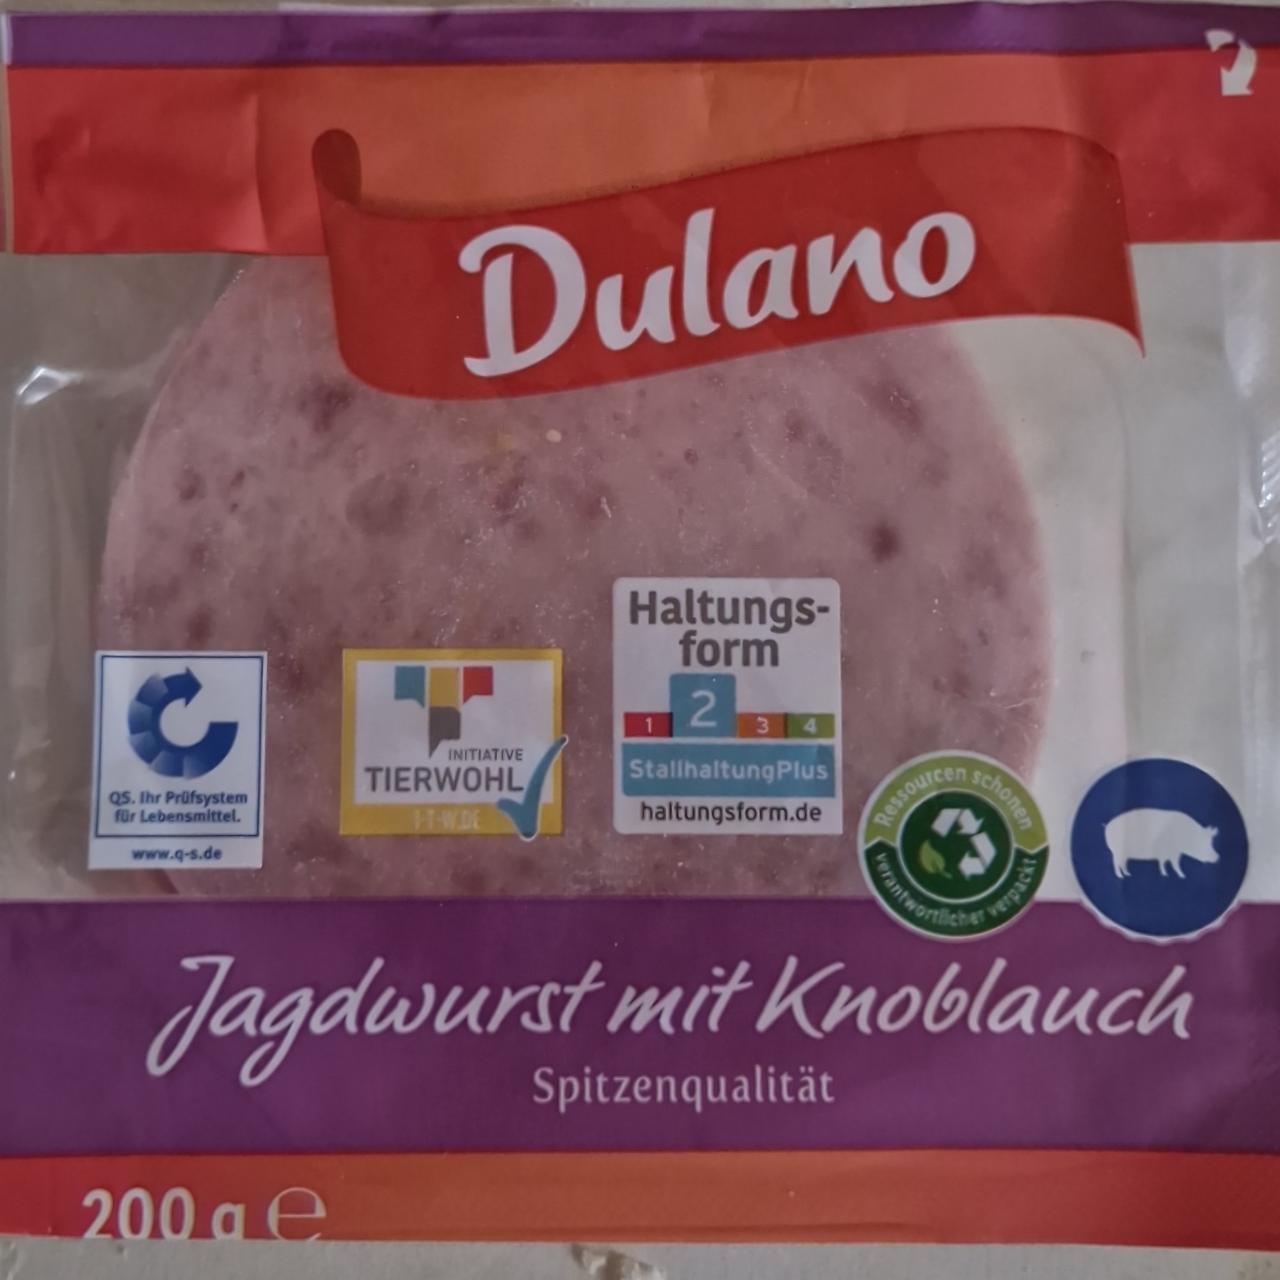 Fotografie - Jagdwurst mit Knoblauch Spitzenqualität Dulano